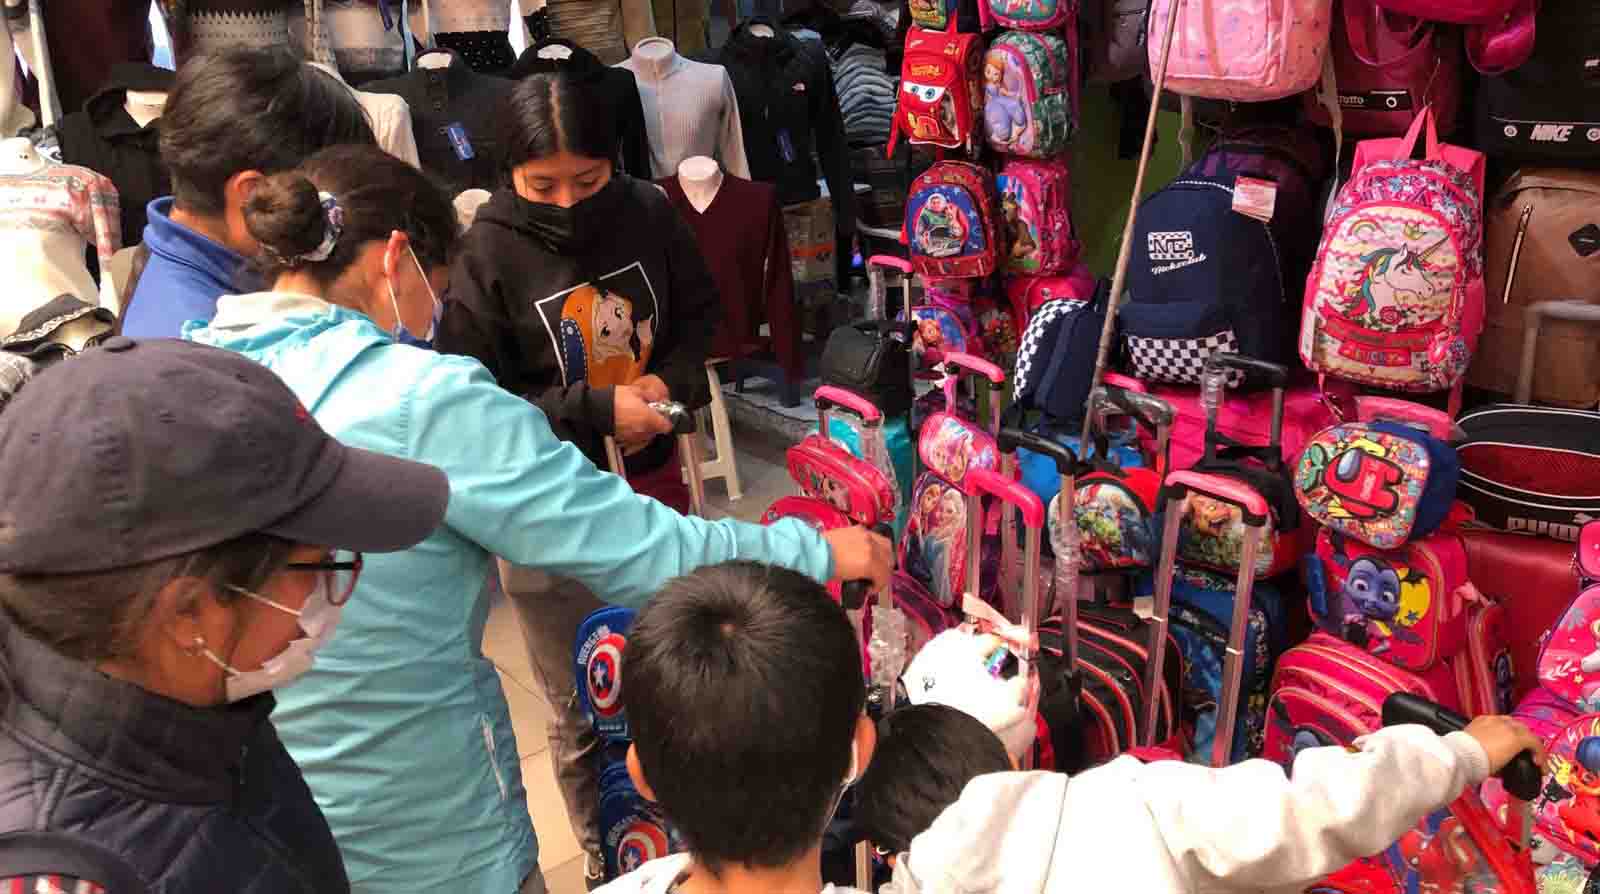 Los centros comerciales lucieron llenos de familias en busca de uniformes, mochilas y otros insumos para el inicio de clases. Foto: Diego Pallero / EL COMERCIO.